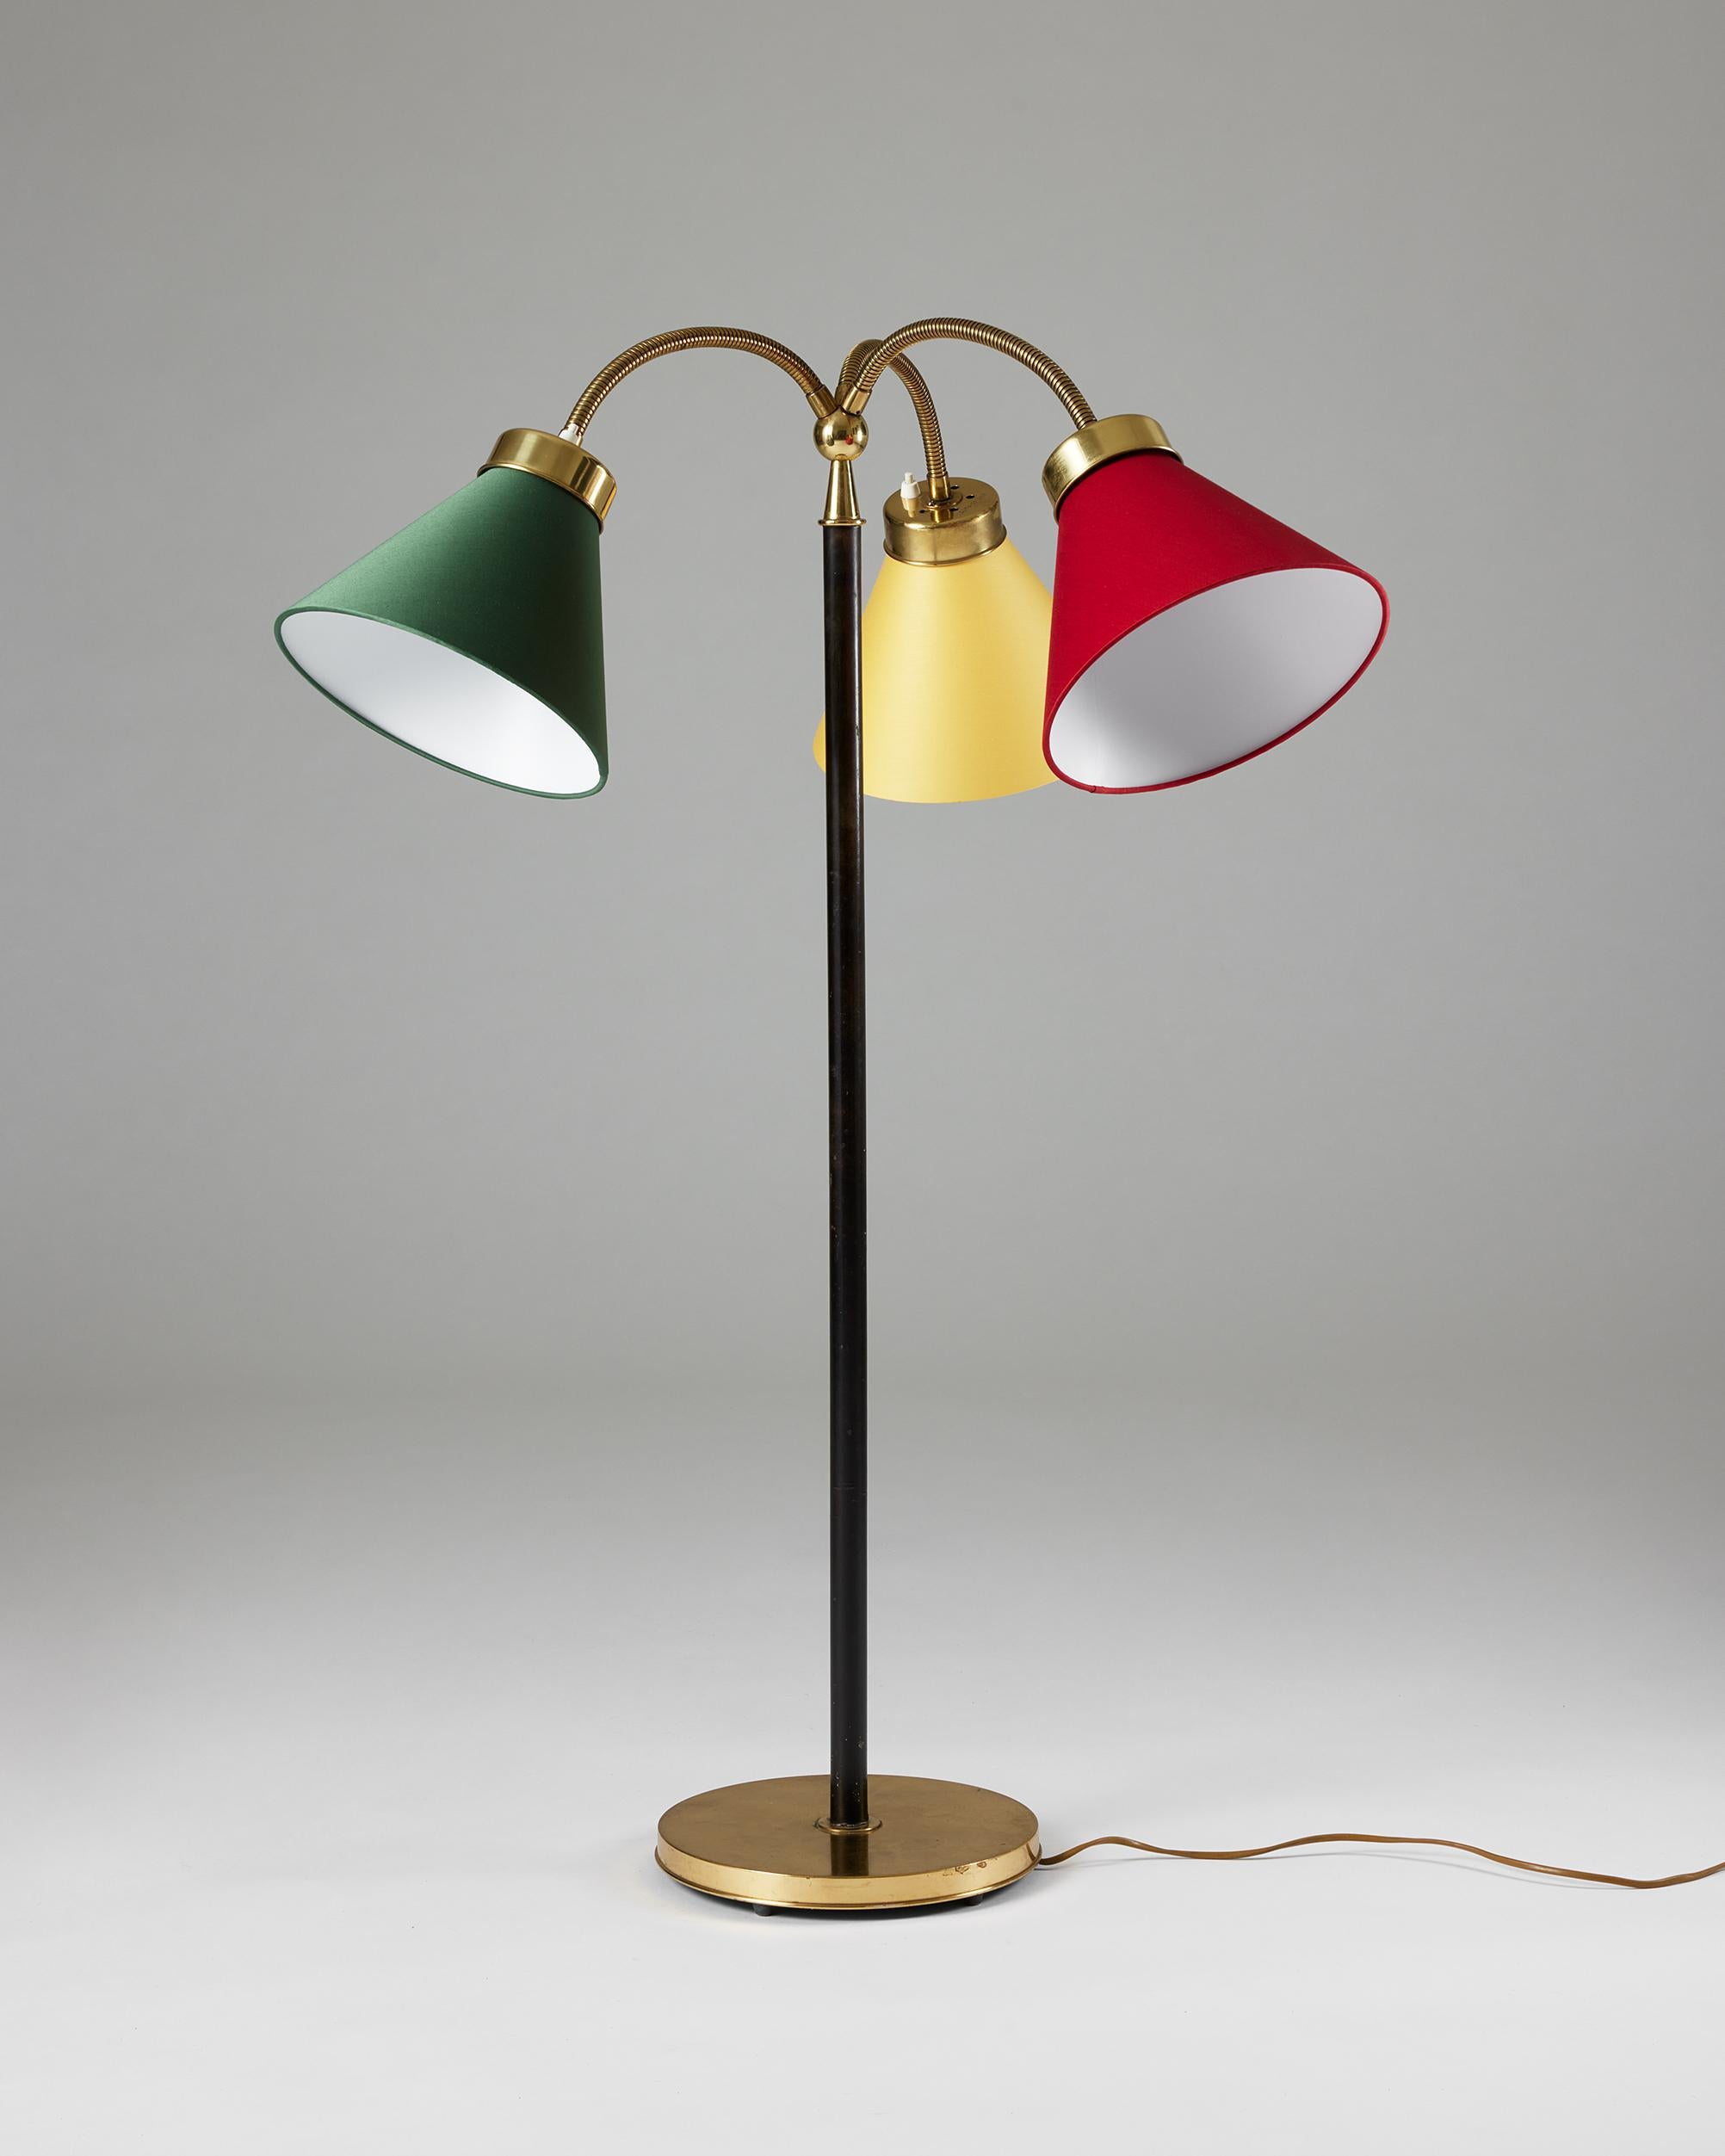 Mid-Century Modern Floor Lamp ‘San Francisco’ Model G2431 Designed by Josef Frank for Svenskt Tenn